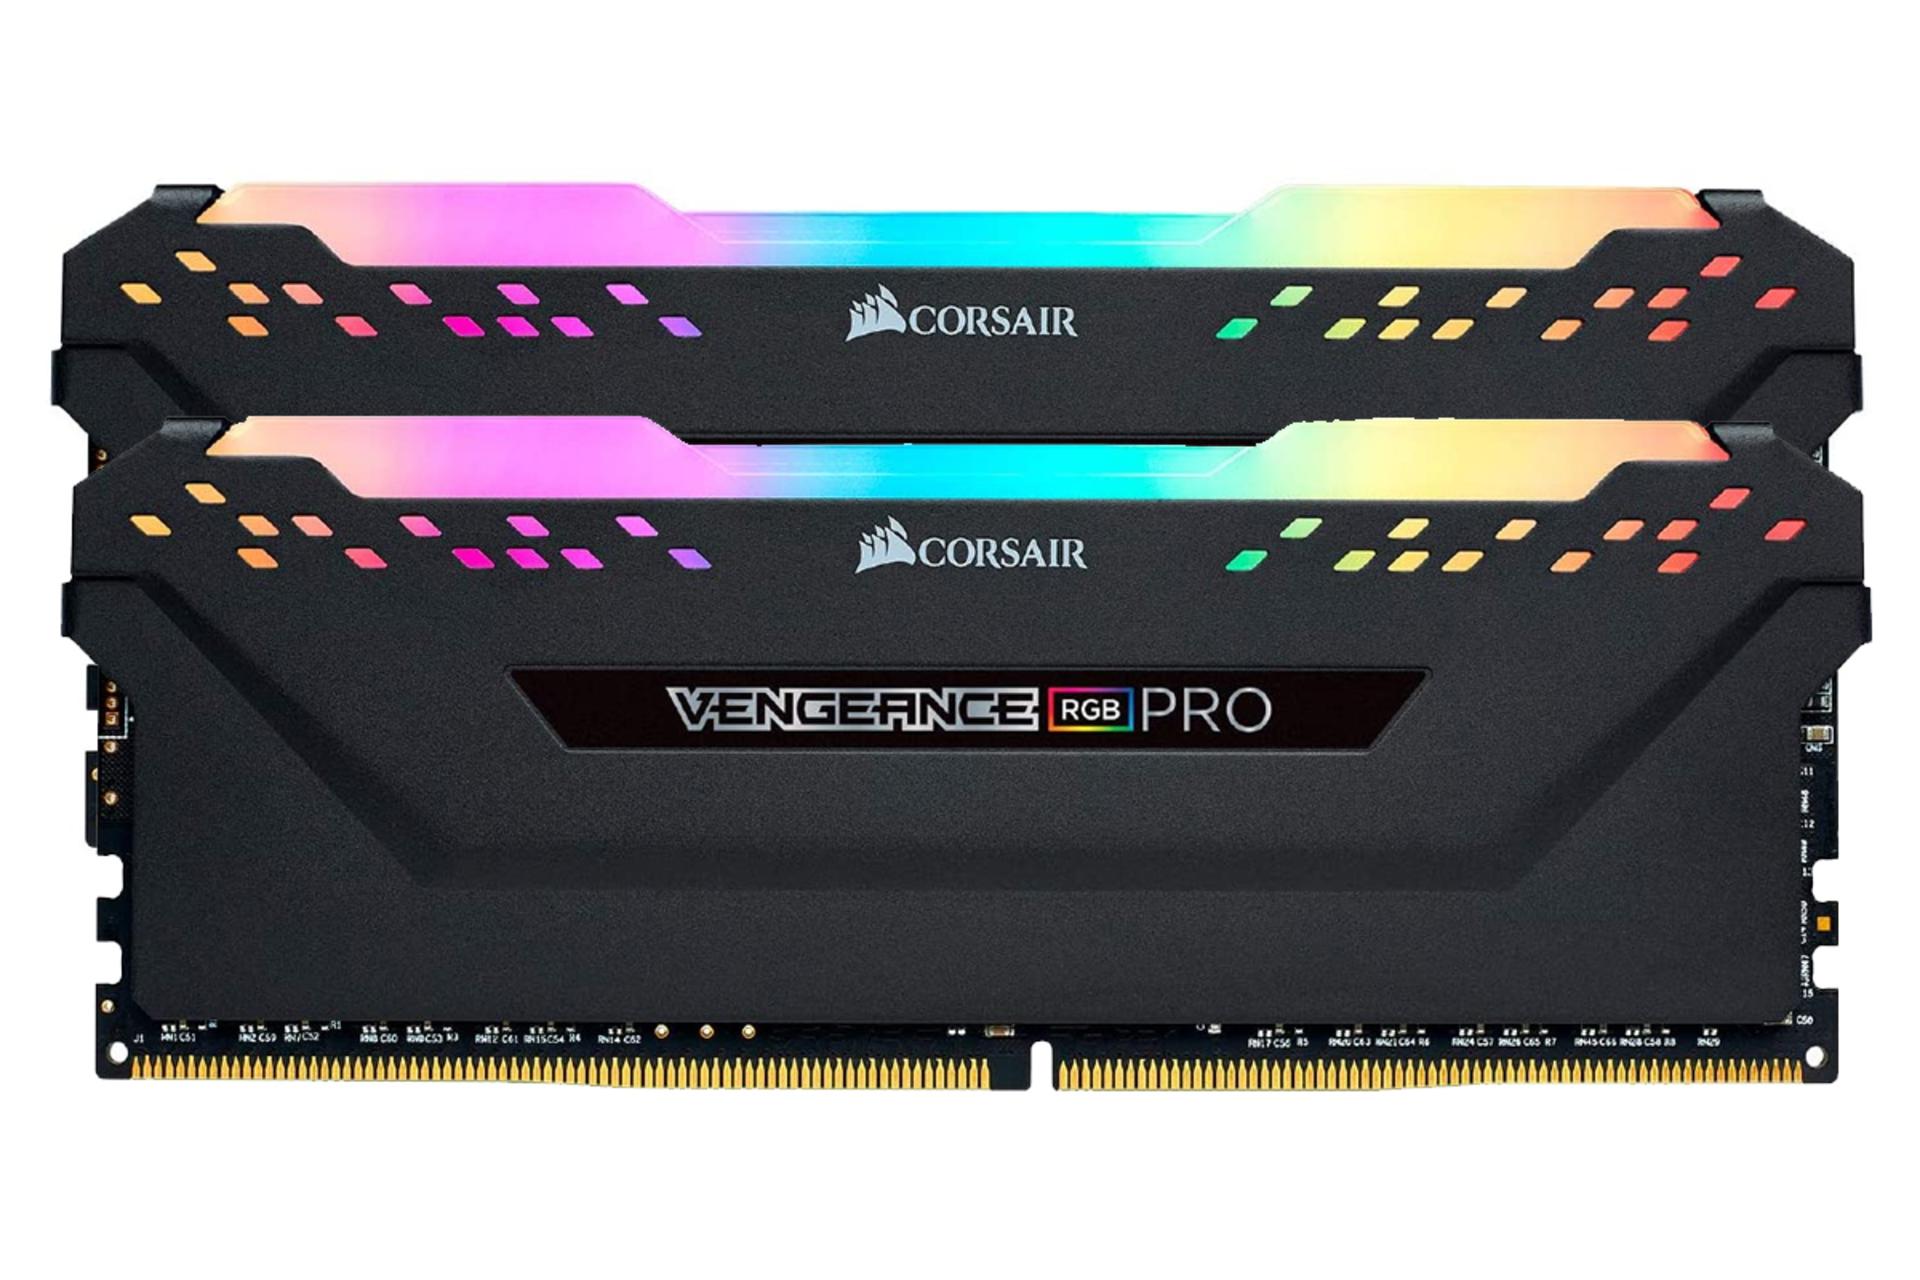 نمای جلو رم کورسیر VENGEANCE RGB PRO ظرفیت 16 گیگابایت (2x8) از نوع DDR4-3600